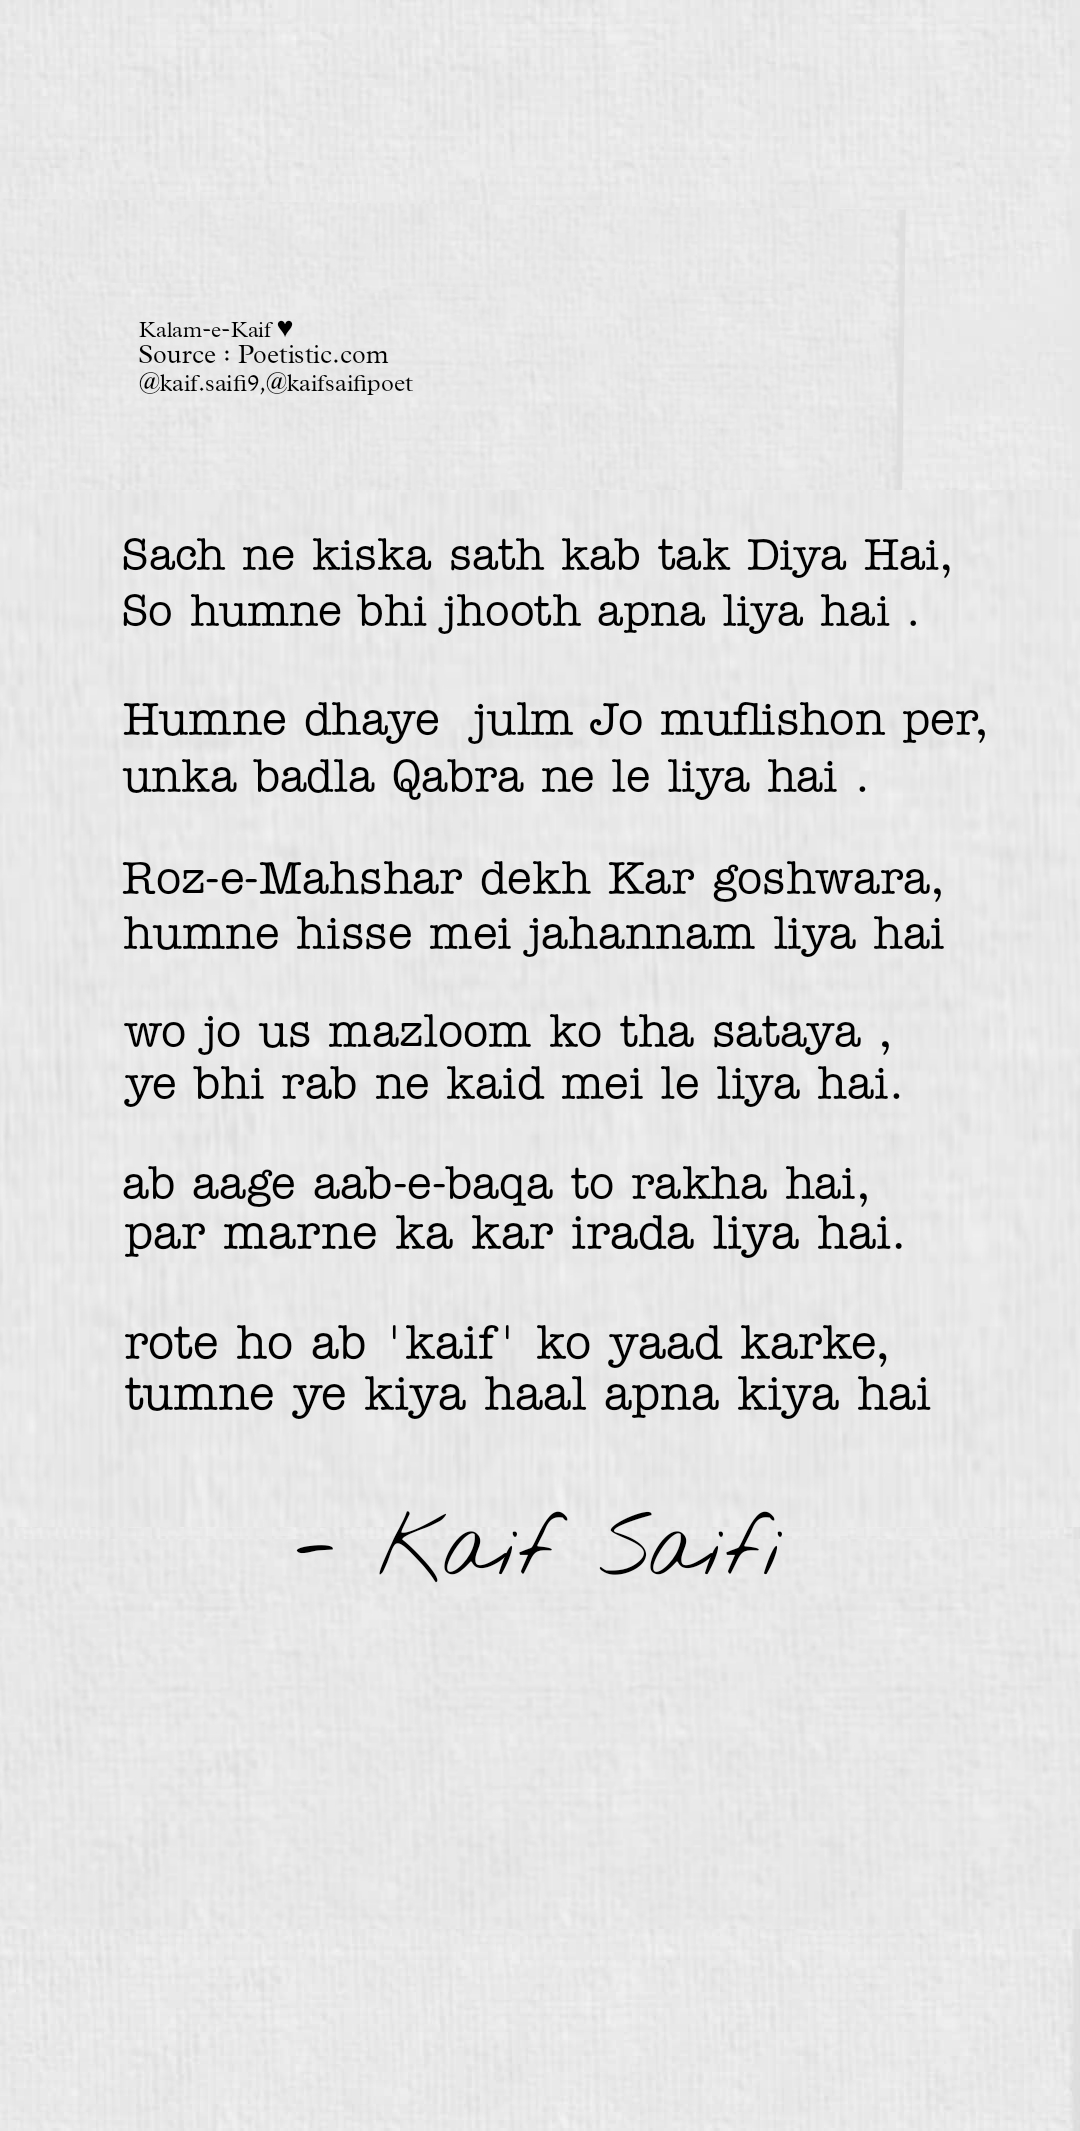 Kaif Saifi ghazal - सच ने किस का साथ कब तक दिया है #kaifsaifi's image